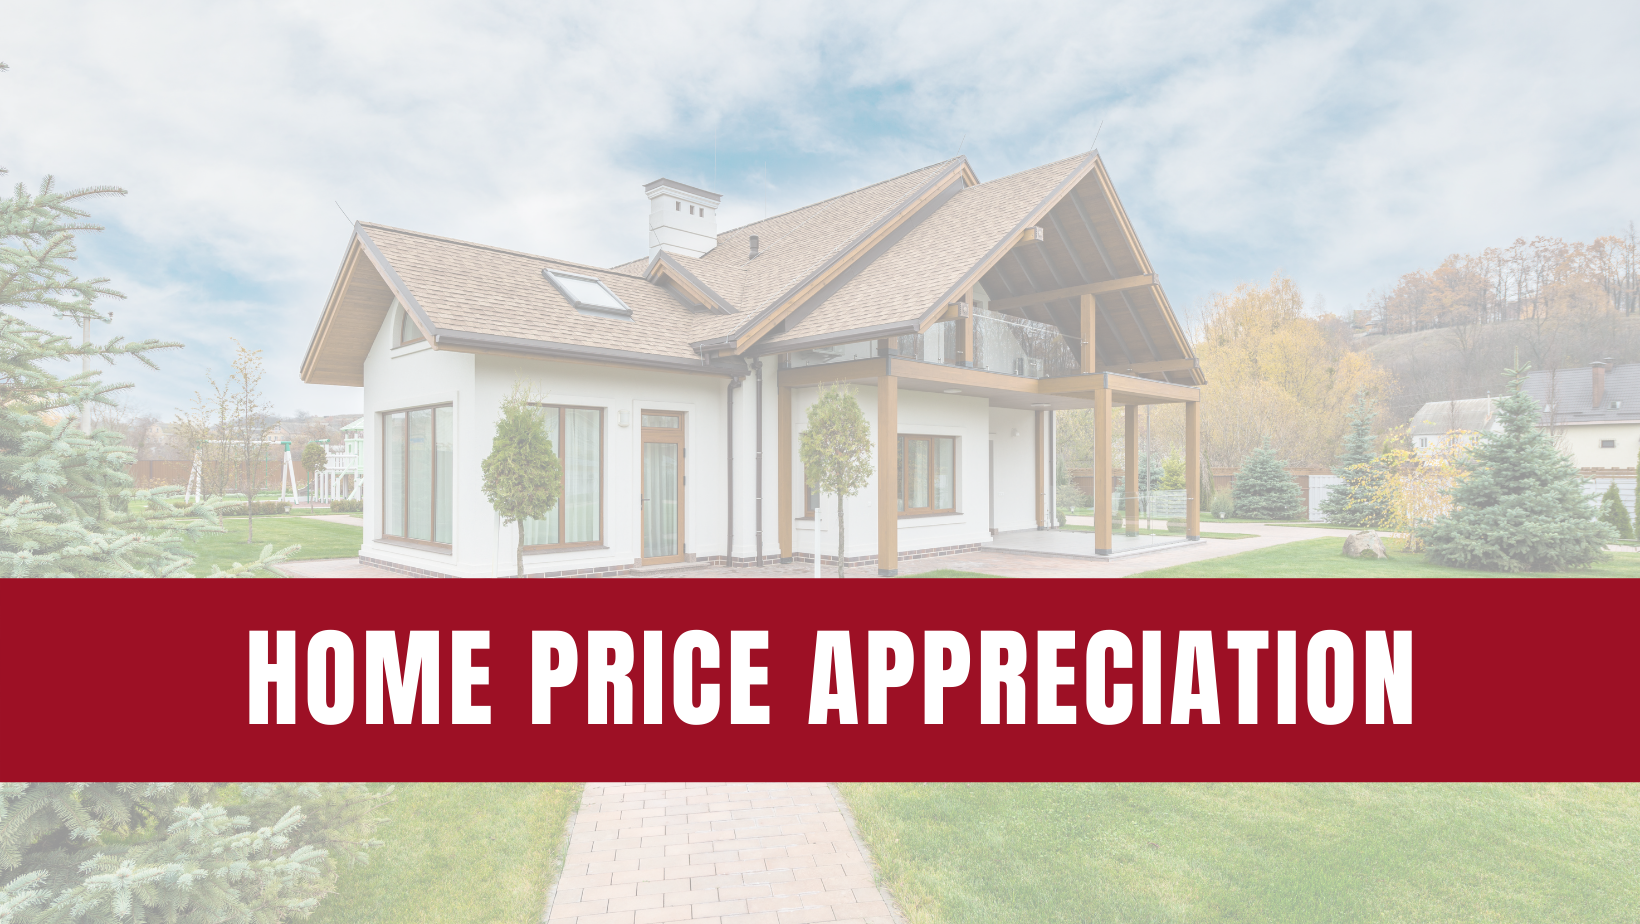 The Future of Home Price Appreciation